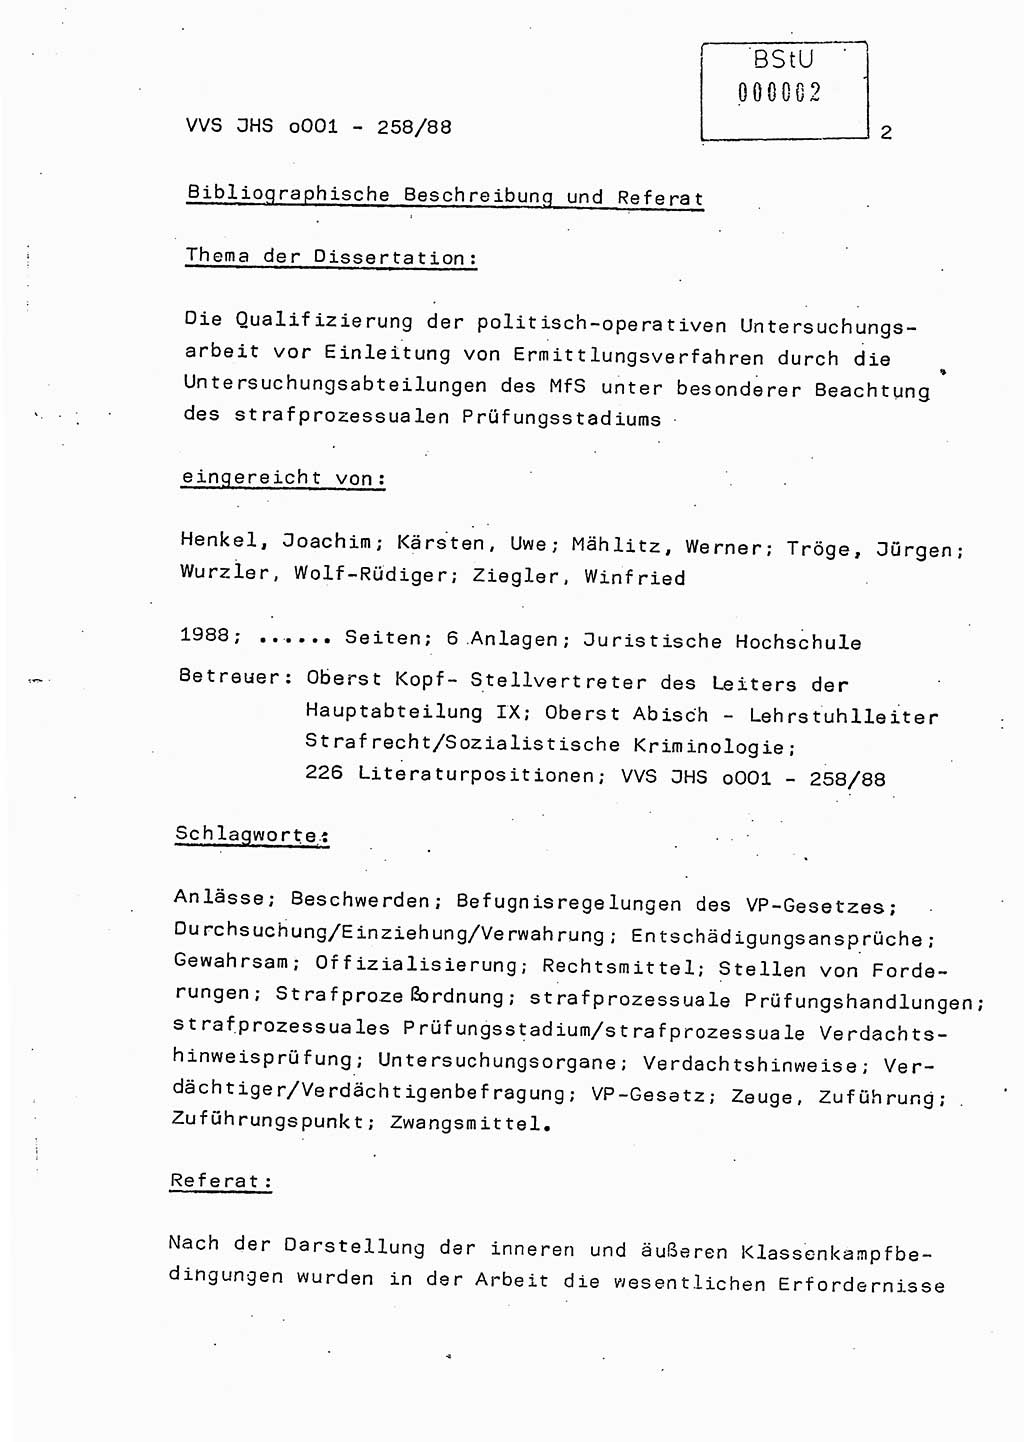 Dissertation, Oberleutnant Uwe Kärsten (JHS), Hauptmann Dr. Joachim Henkel (JHS), Oberstleutnant Werner Mählitz (Leiter der Abt. Ⅸ BV Rostock), Oberstleutnant Jürgen Tröge (HA Ⅸ/AKG), Oberstleutnant Winfried Ziegler (HA Ⅸ/9), Major Wolf-Rüdiger Wurzler (JHS), Ministerium für Staatssicherheit (MfS) [Deutsche Demokratische Republik (DDR)], Juristische Hochschule (JHS), Vertrauliche Verschlußsache (VVS) o001-258/88, Potsdam 1988, Seite 2 (Diss. MfS DDR JHS VVS o001-258/88 1988, S. 2)